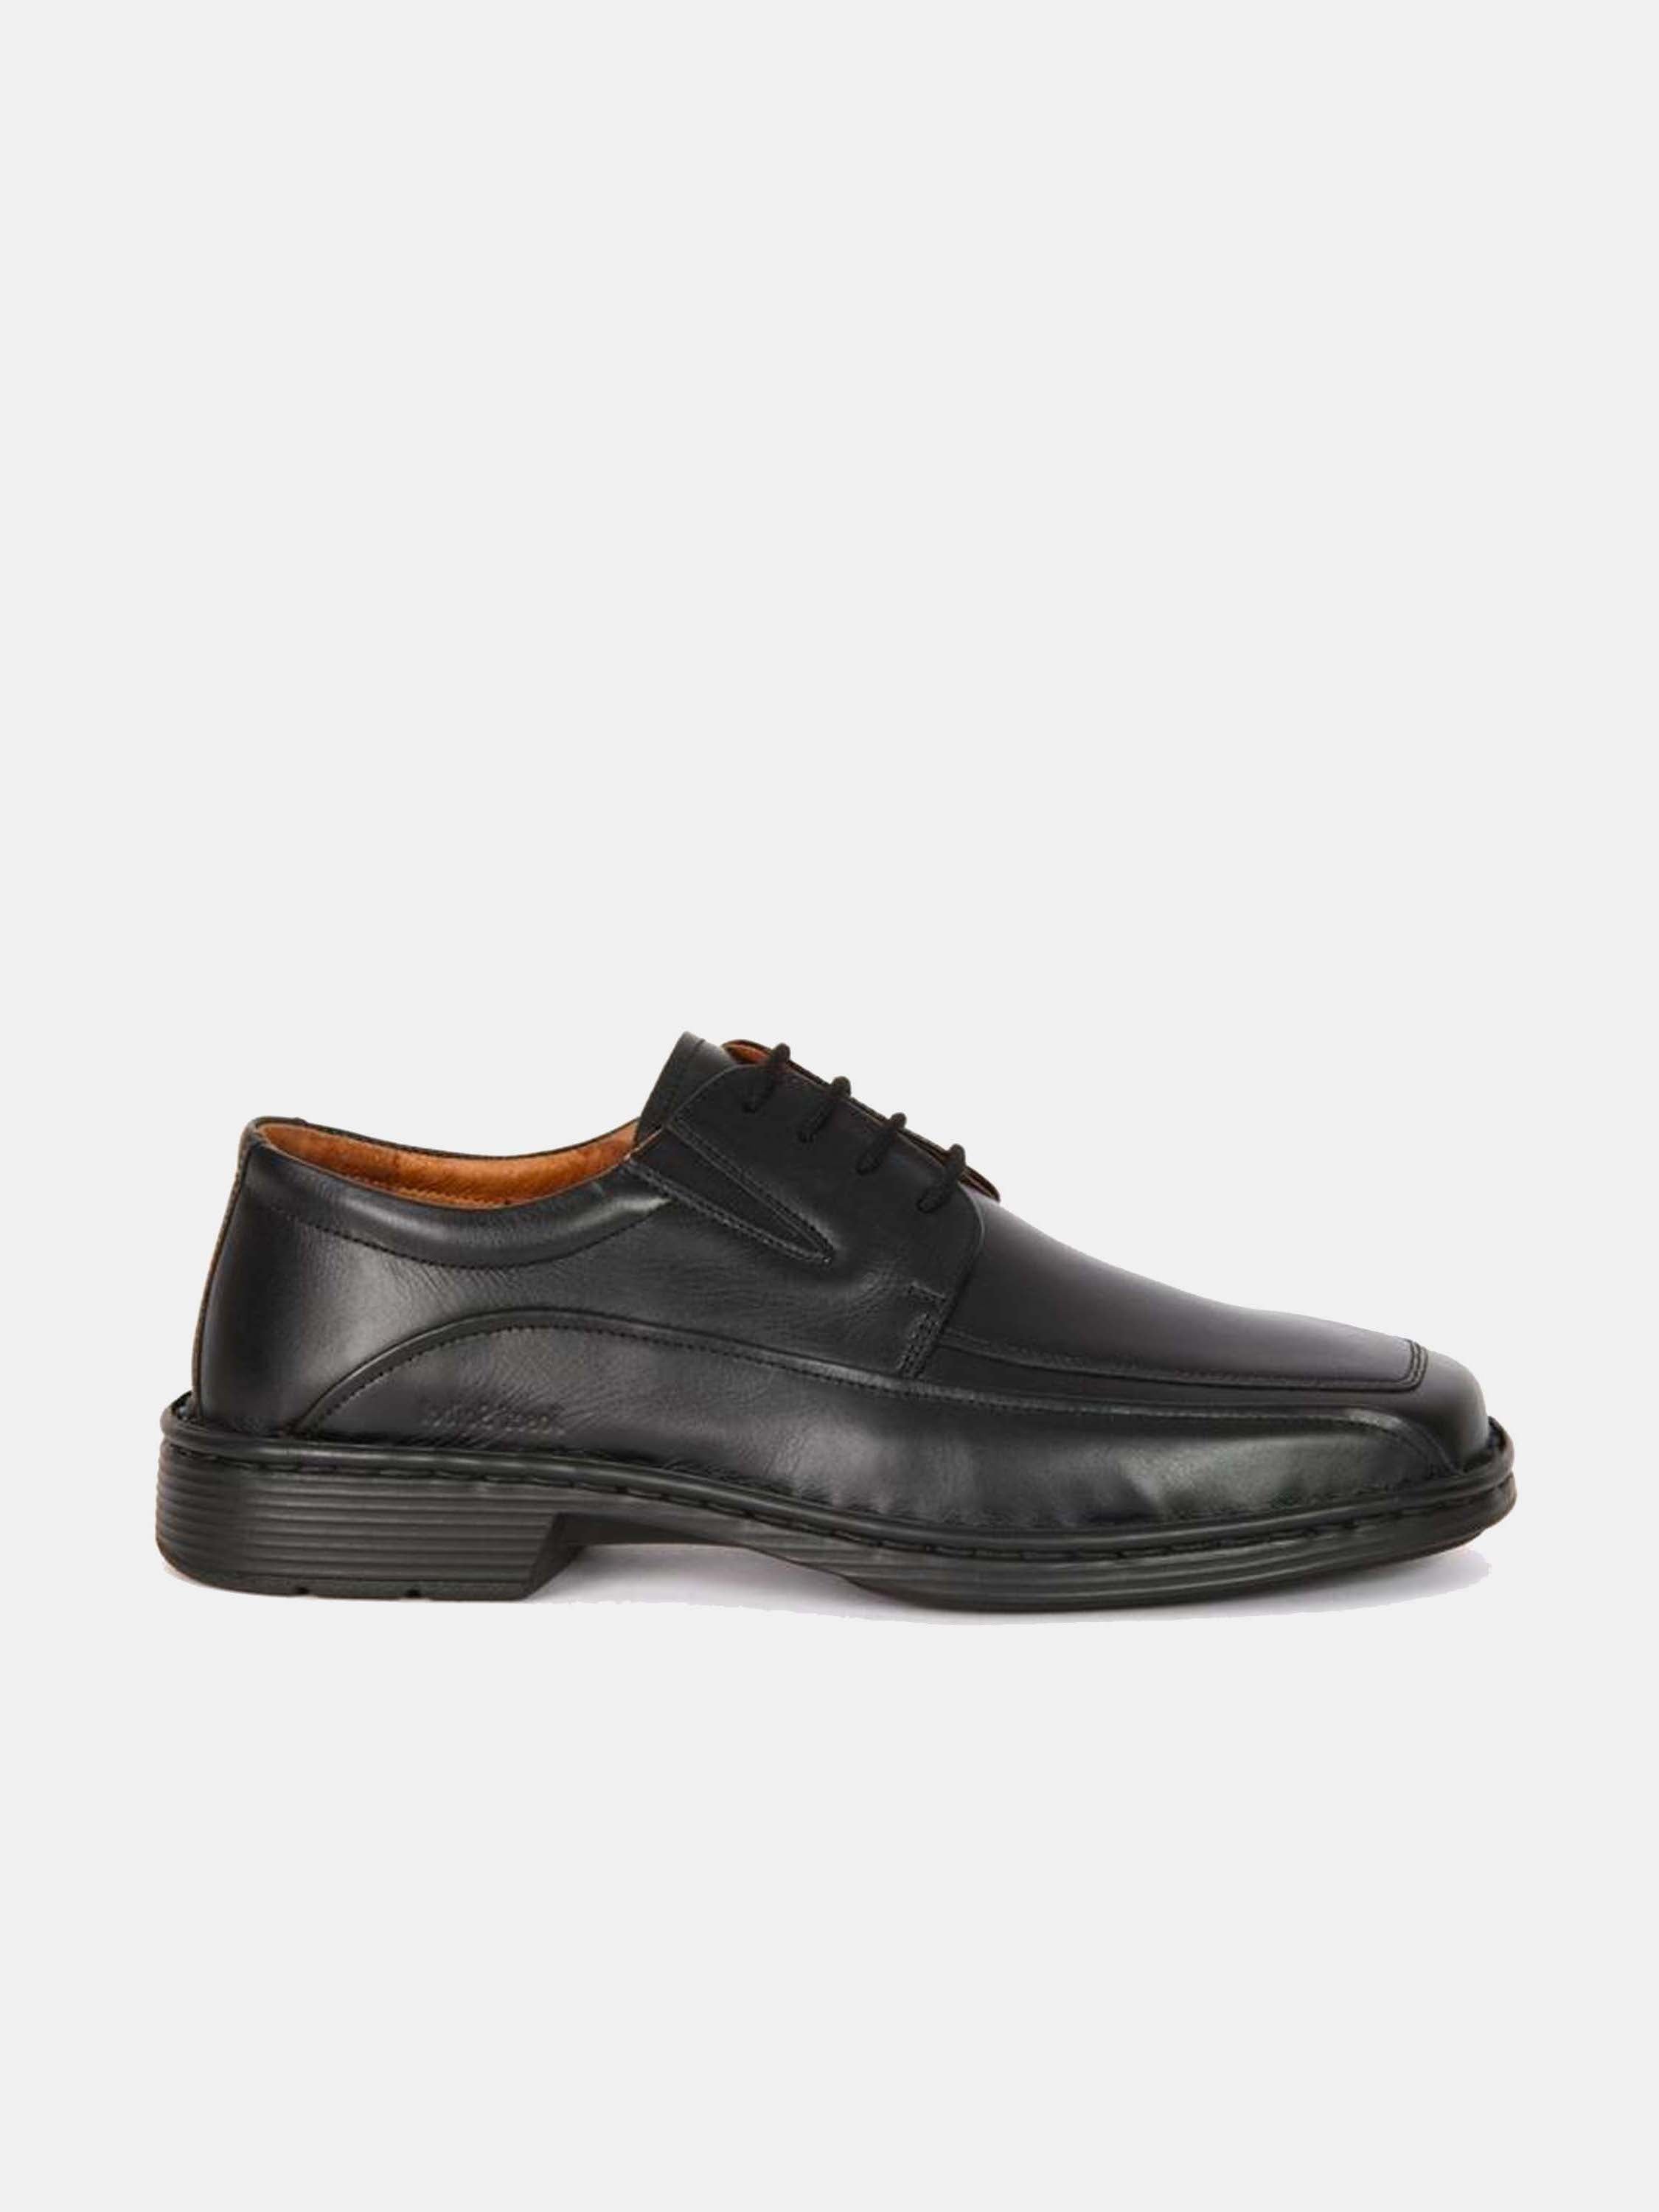 Josef Seibel Brian Men's Lace Up Shoes #color_Black